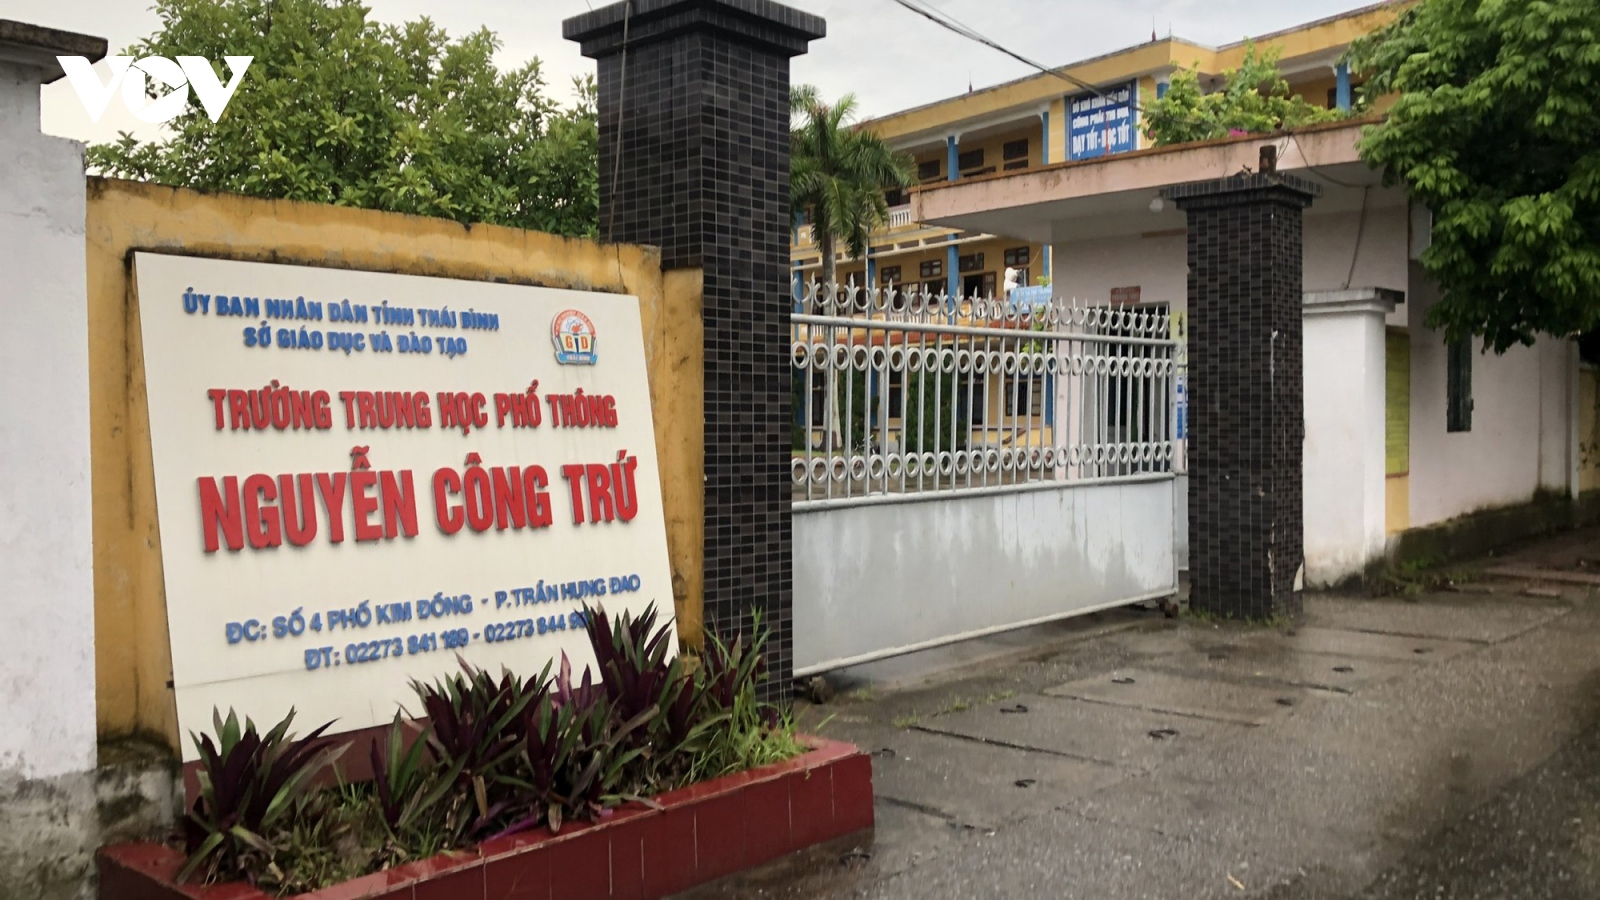 Làm rõ những nghi vấn trong hoạt động của Trường THPT Nguyễn Công Trứ, Thái Bình